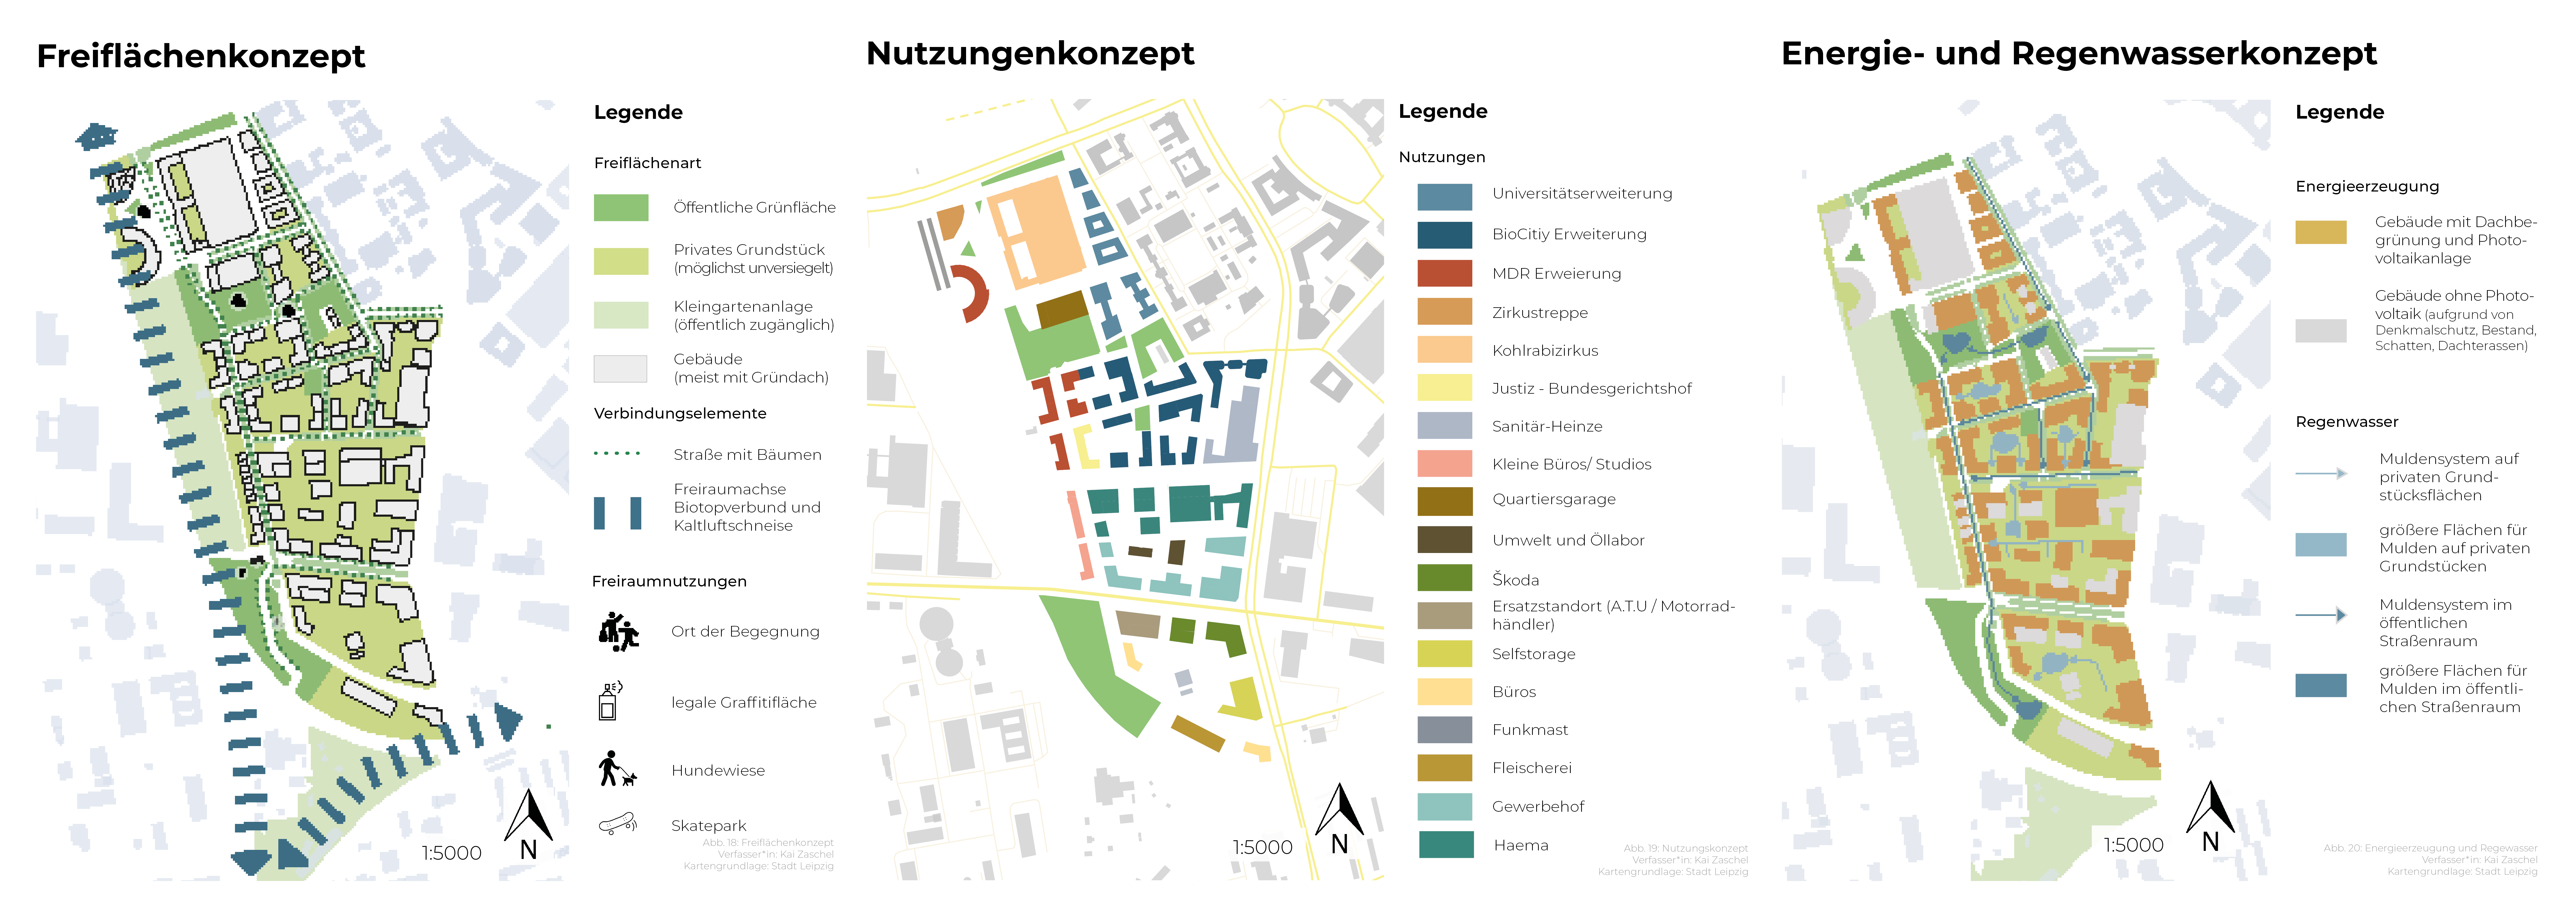 Drei Karten, die verschiedene Quartiersplanungen zeigen: Flächenkonzept, Nutzungenkonzept, Energie- und Regenwasserkonzept